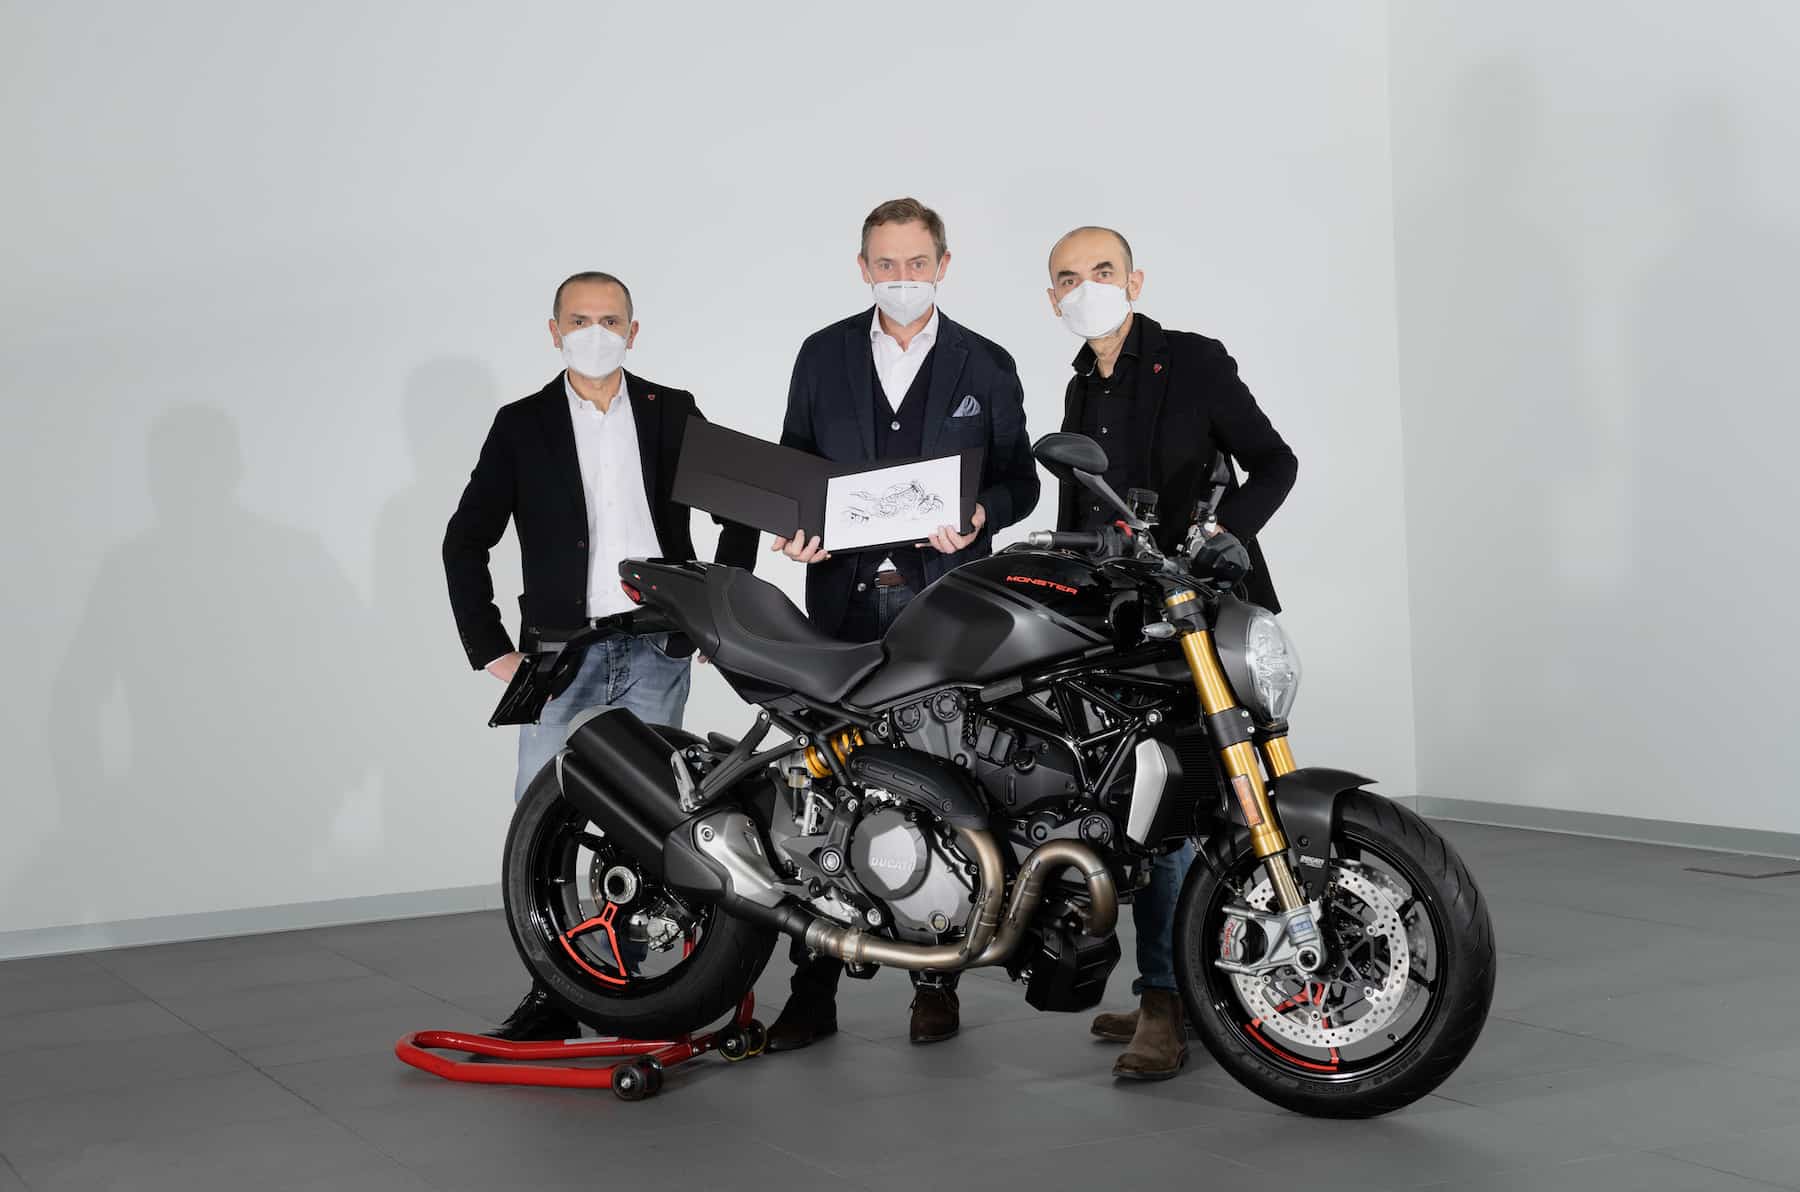 Ducati　累計35万台目に生産されたモンスターはモンスター1200 S “Black on Black”